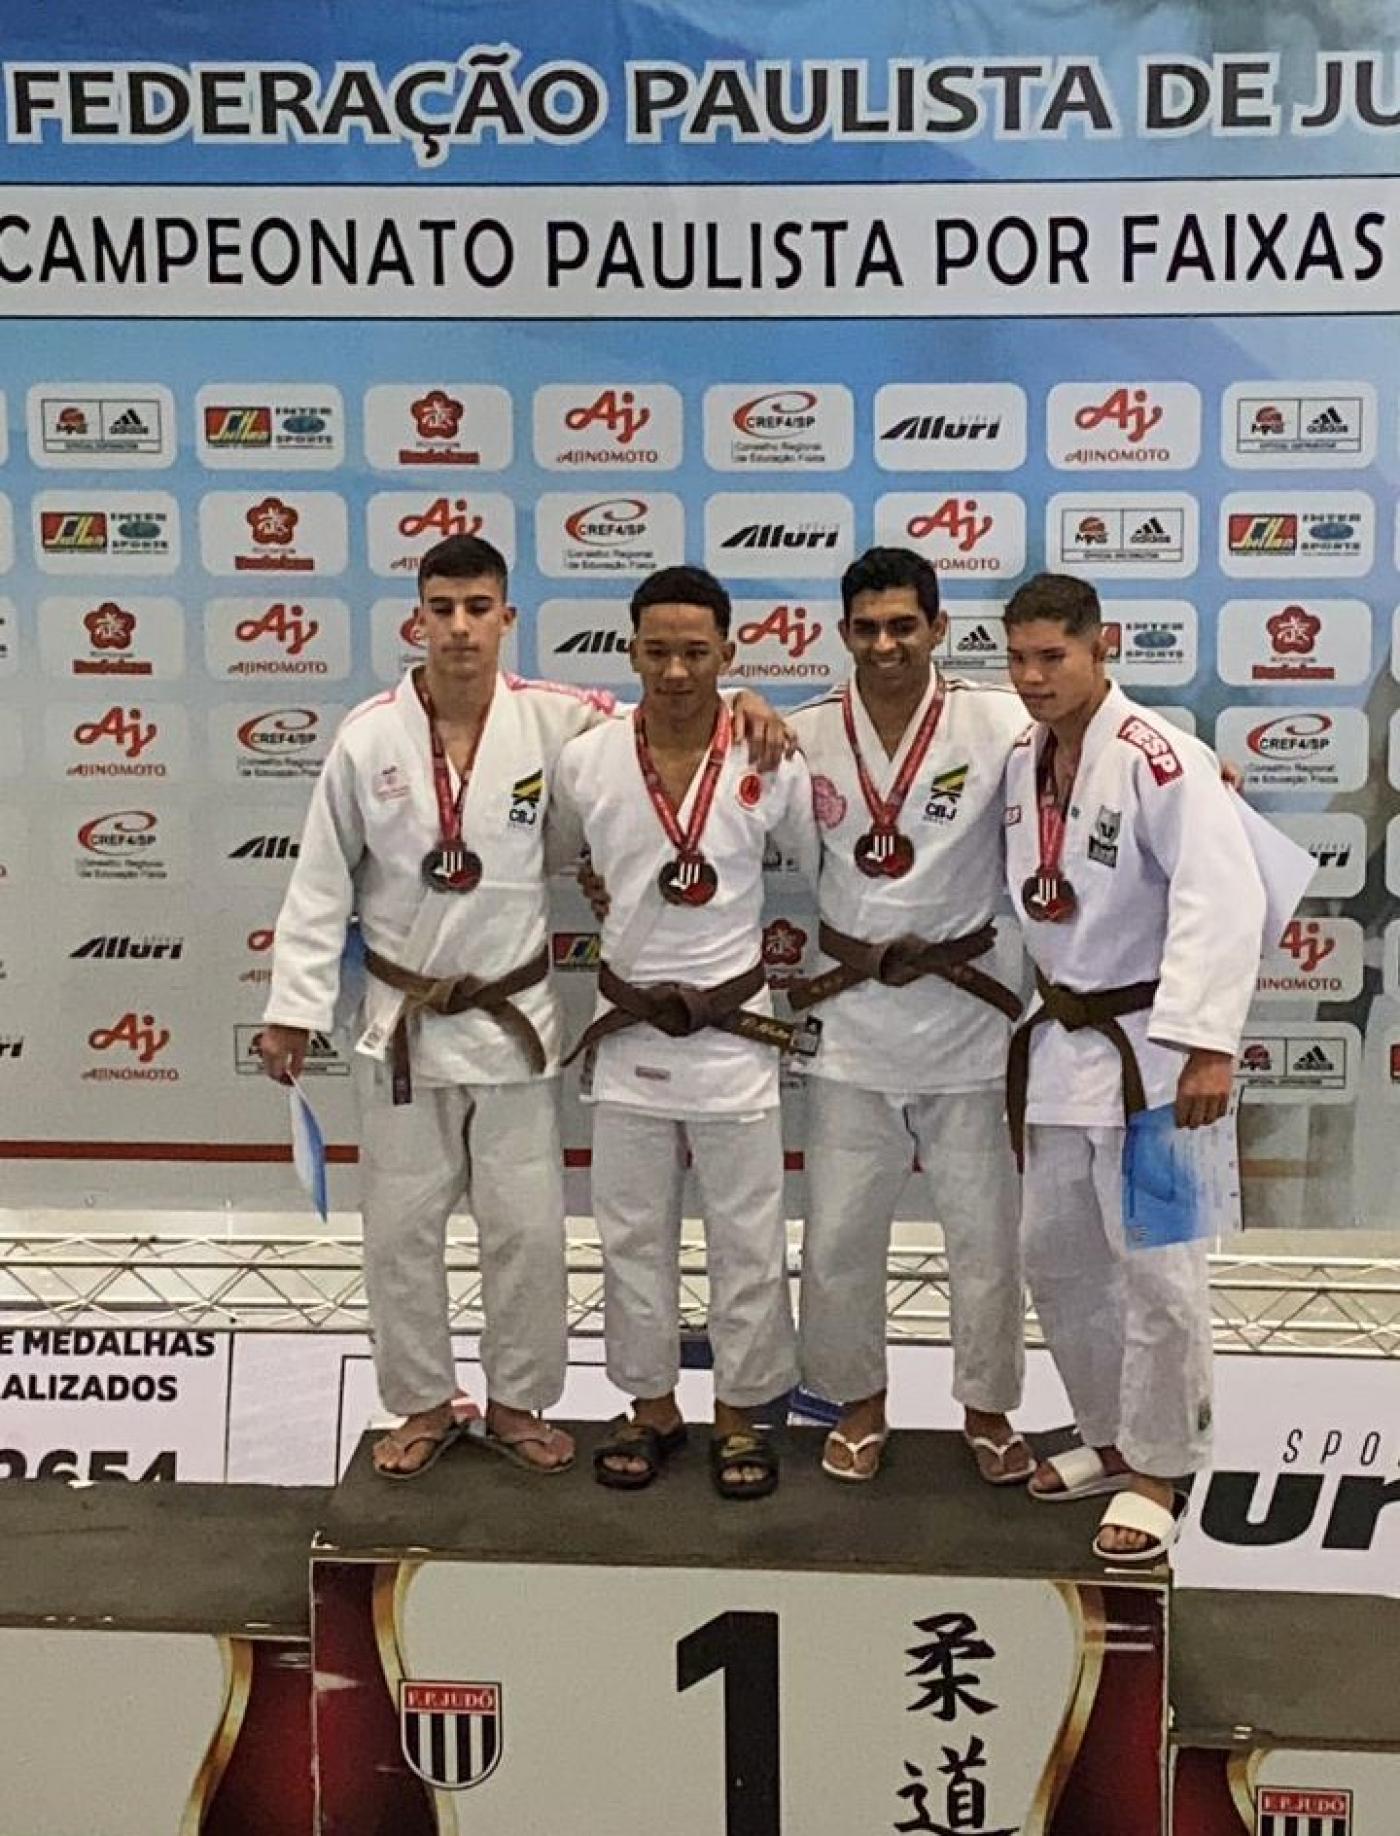 judocas no pódio com medalhas #paratodosverem